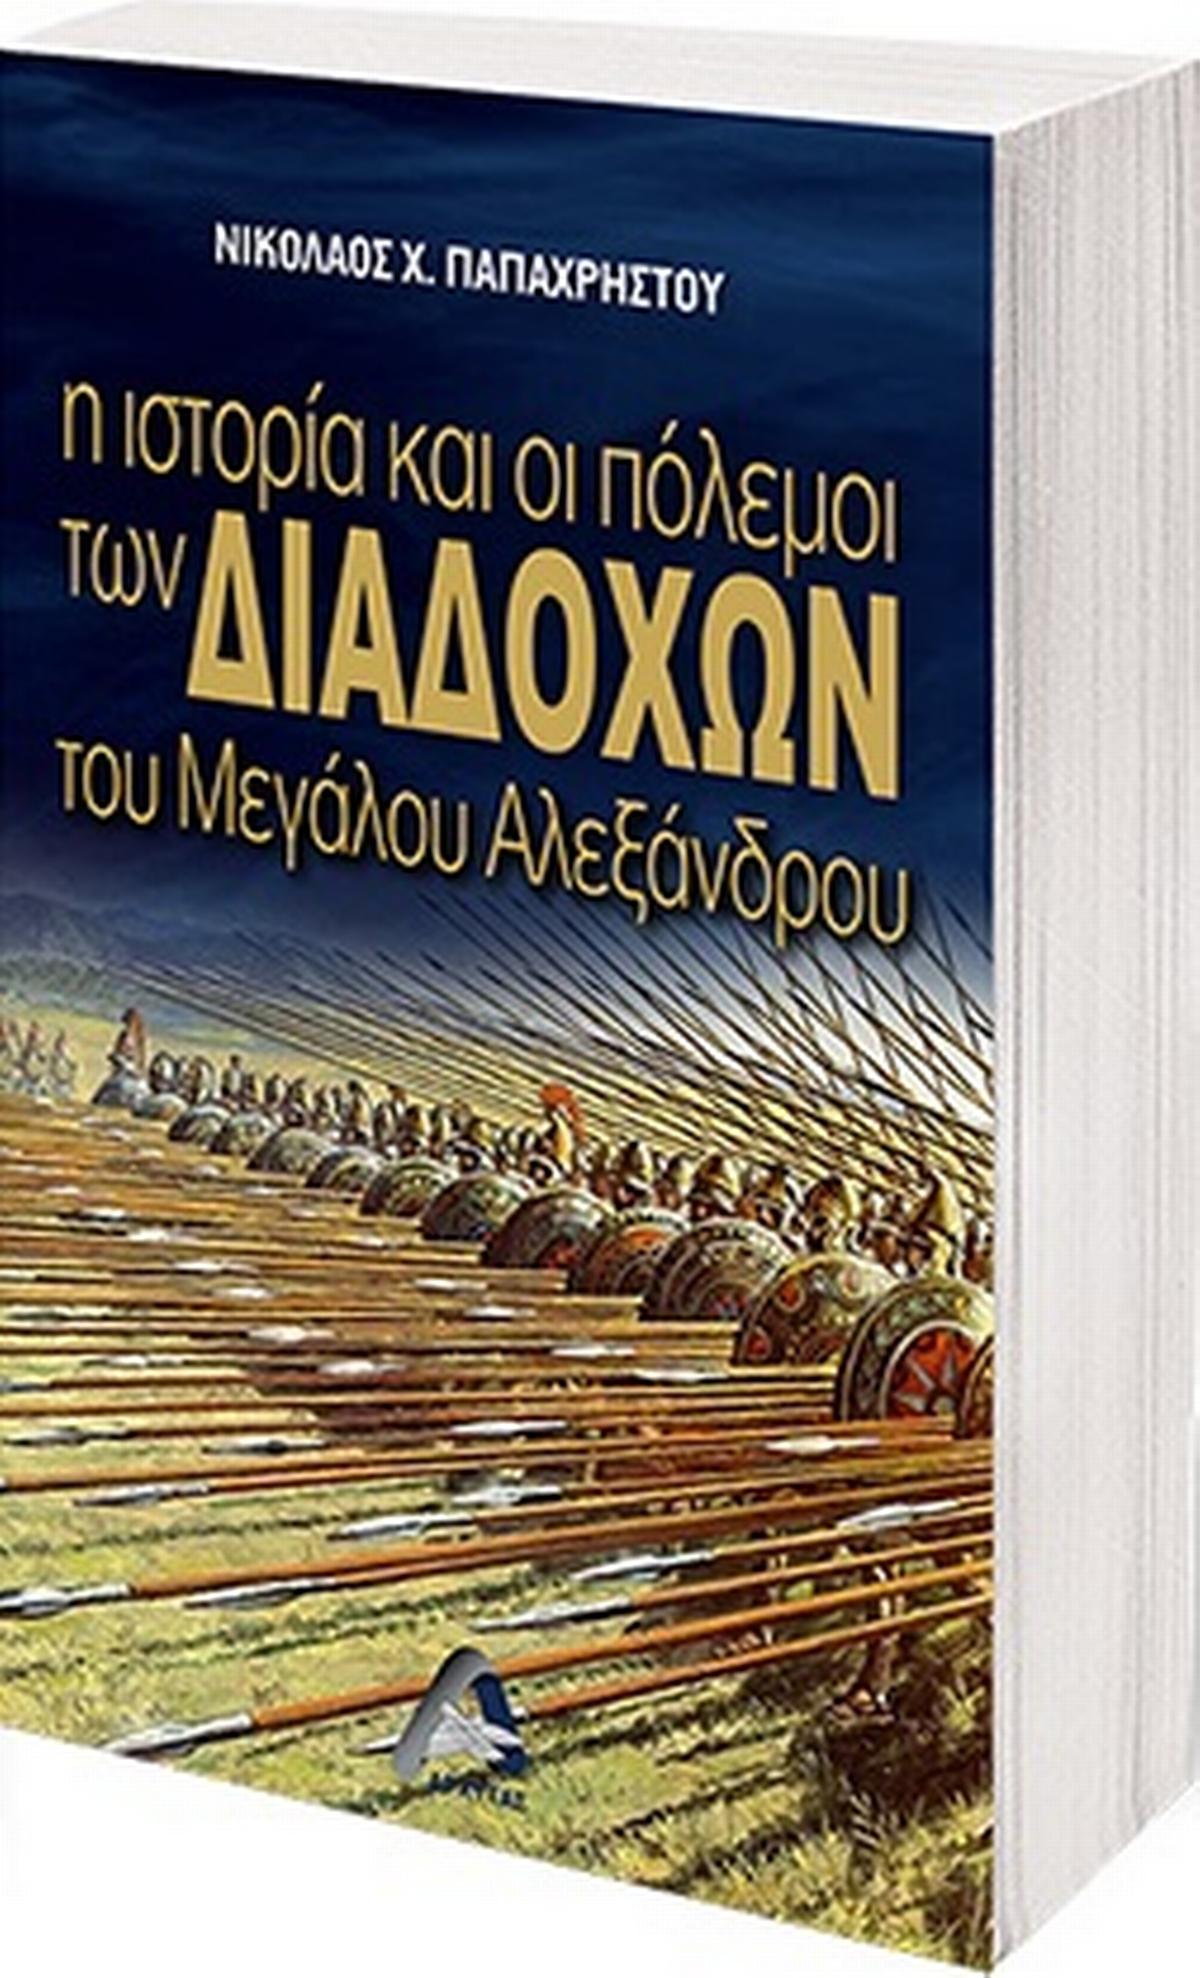 Η ιστορία και οι πόλεμοι των διαδόχων του Μεγάλου Αλεξάνδρου